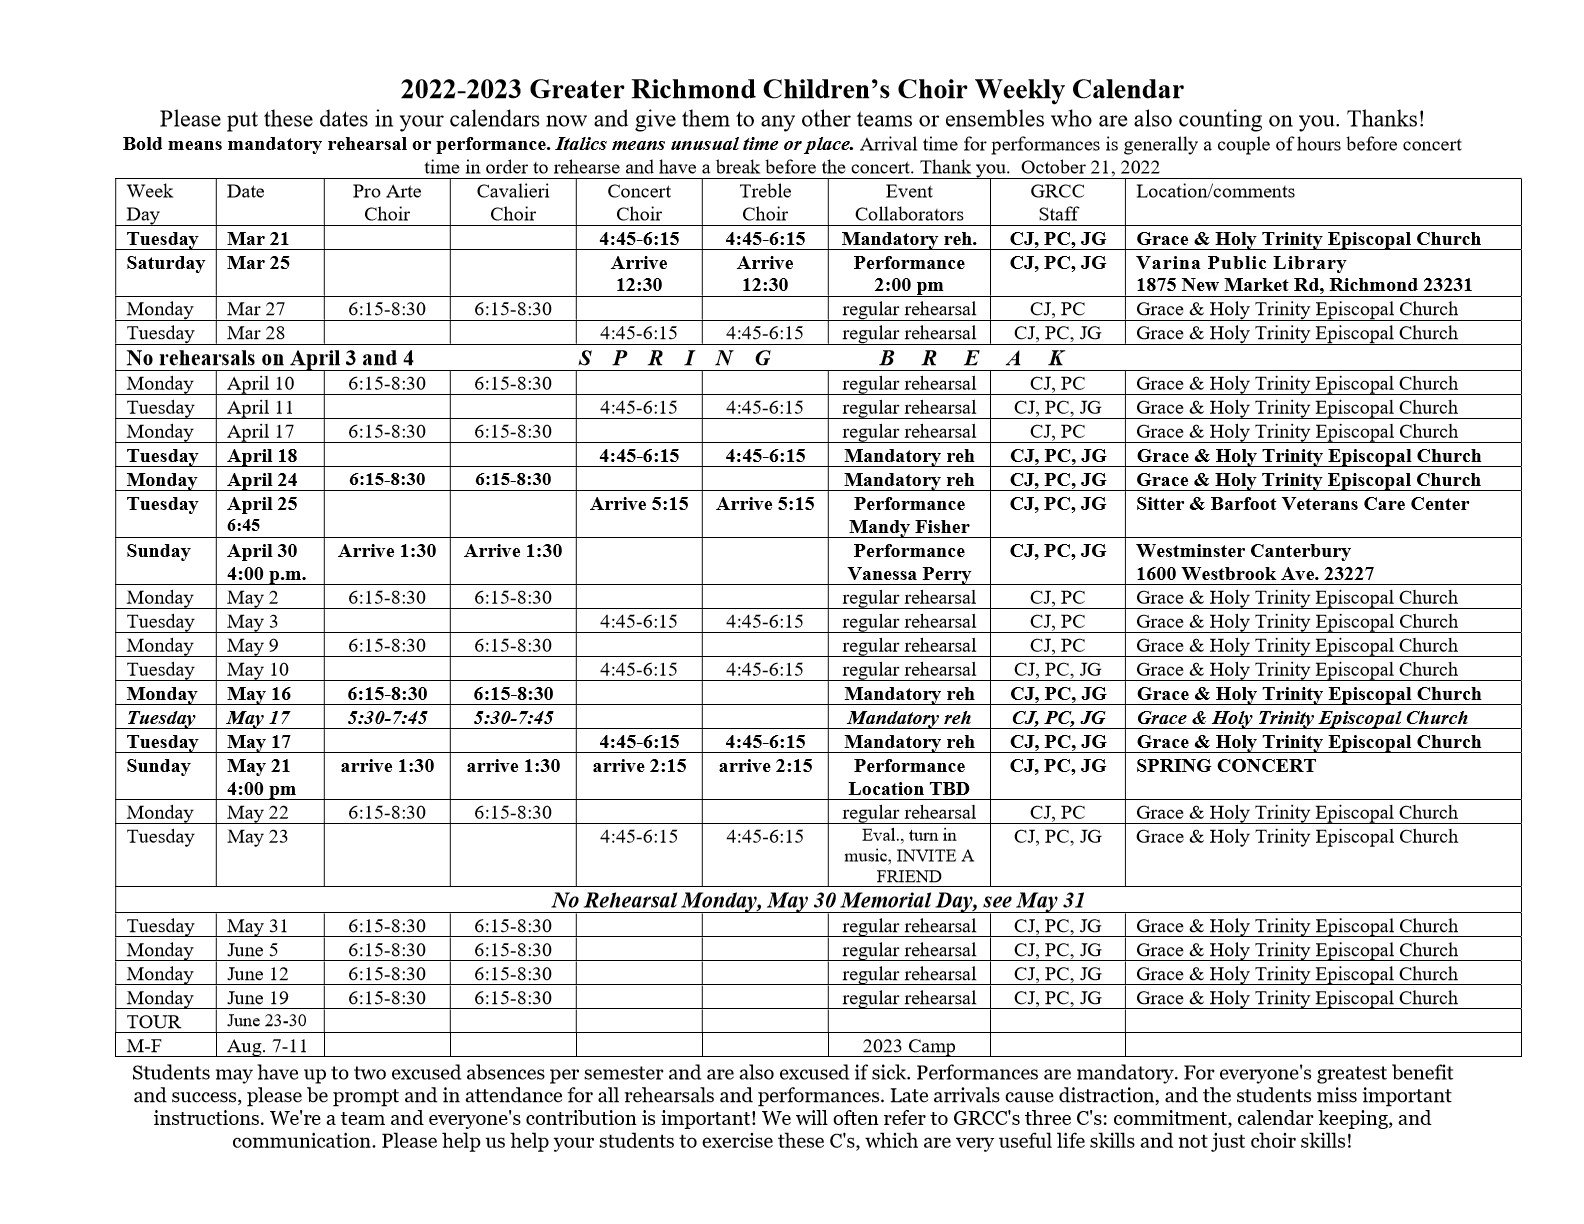 20222023 Weekly Calendar — The Greater Richmond Children's Choir